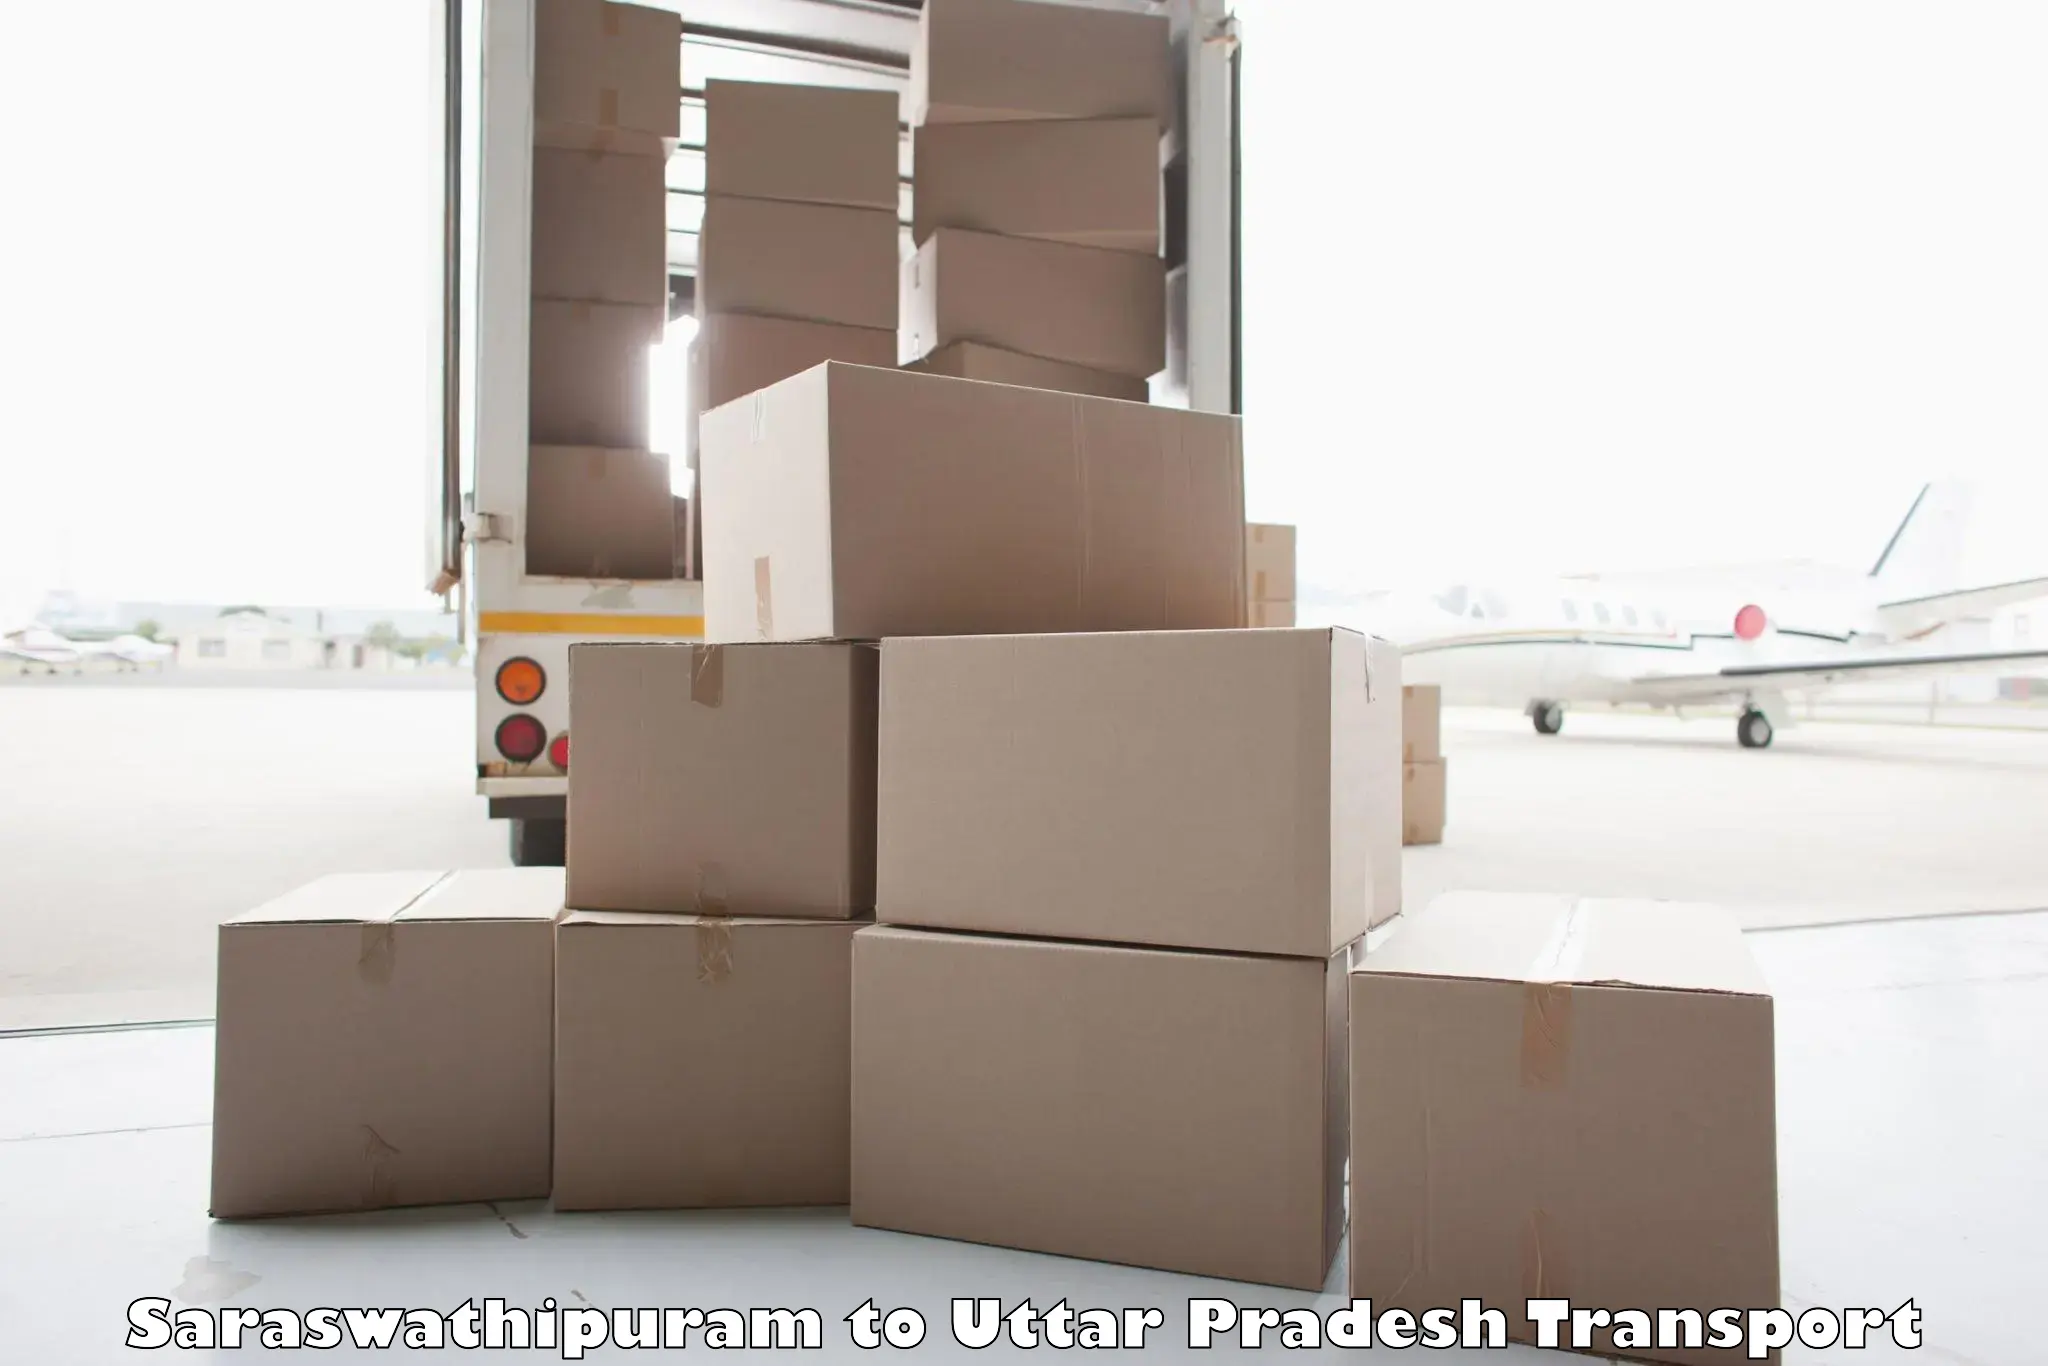 Luggage transport services Saraswathipuram to Nichlaul